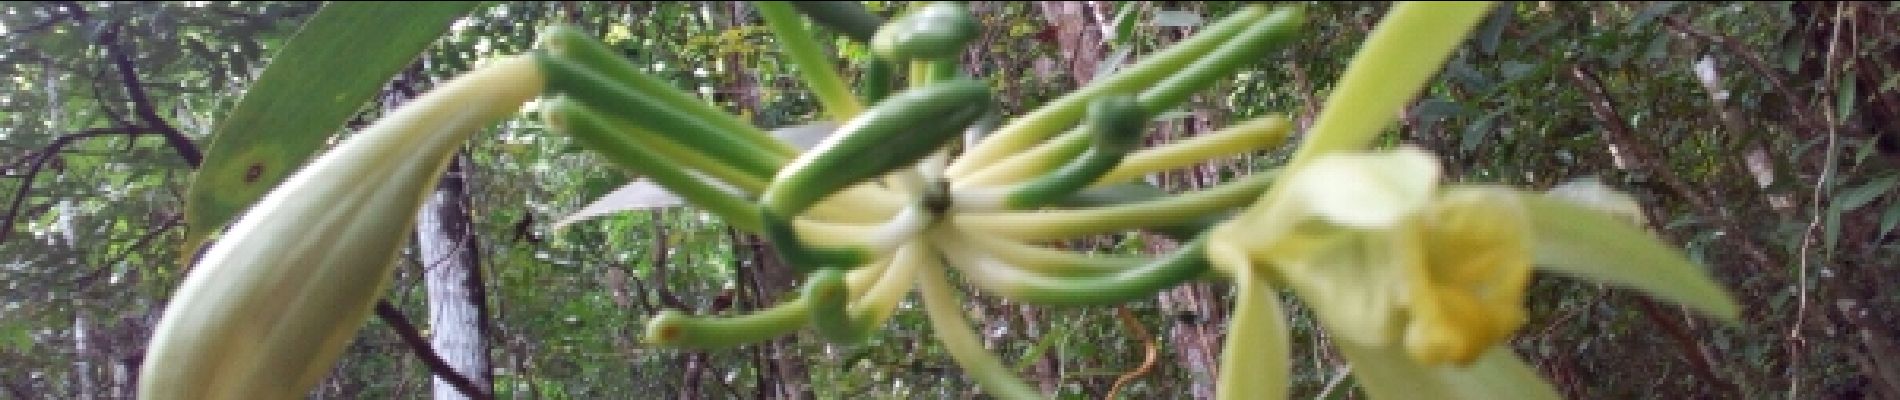 POI Sainte-Luce - La fleur de la Vanille qui est une Épiphyte - Photo